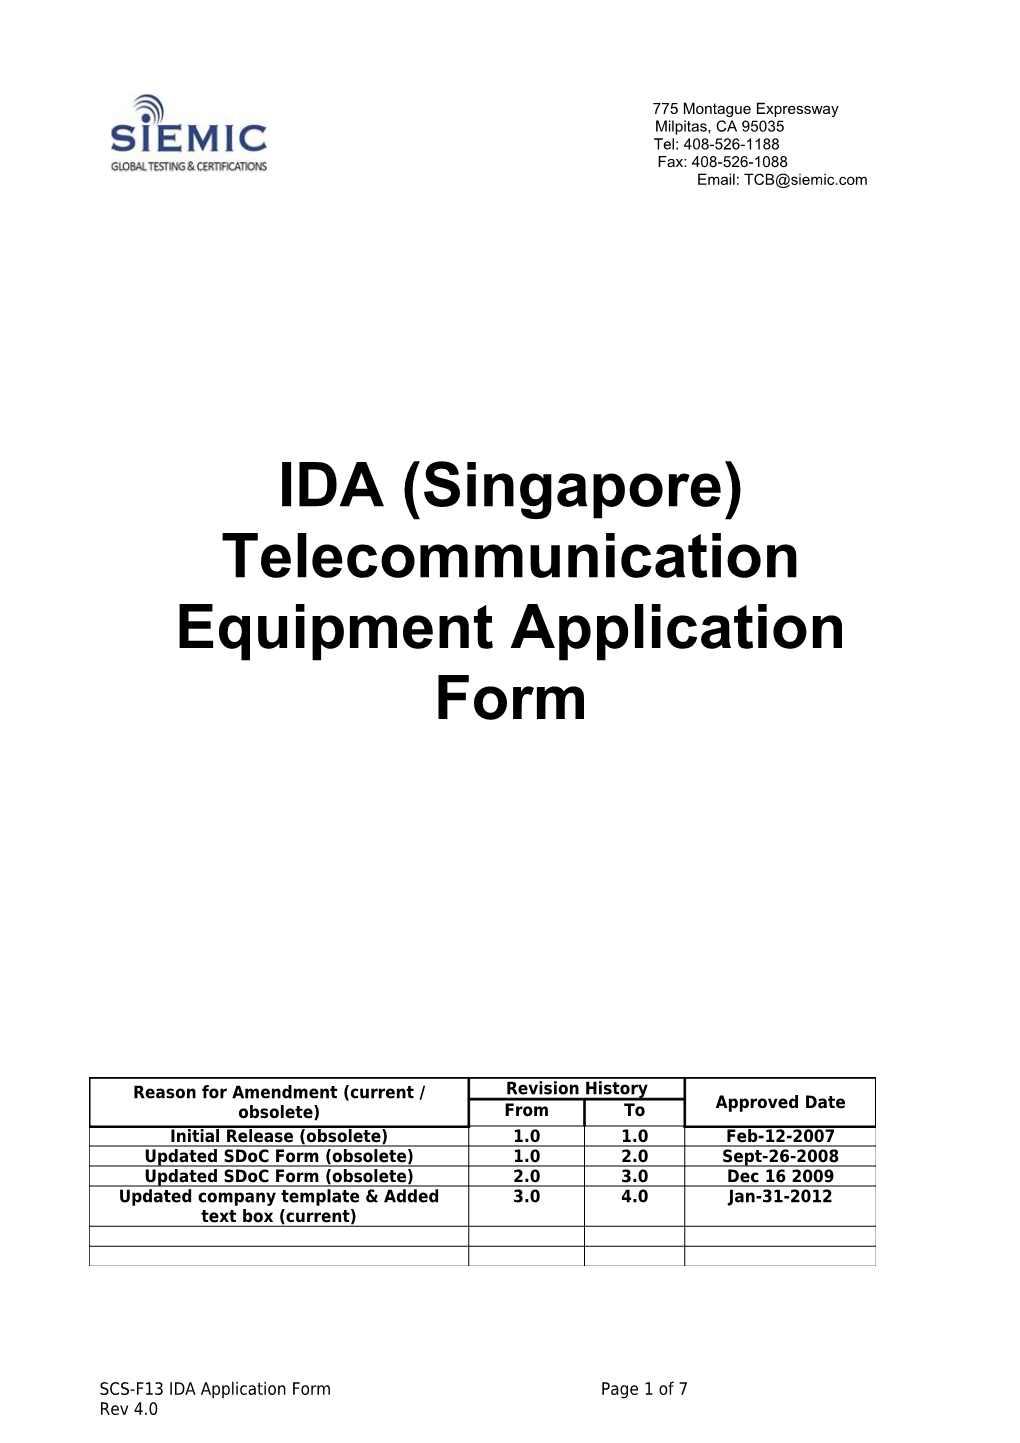 Infocomm Development Authority of Singapore